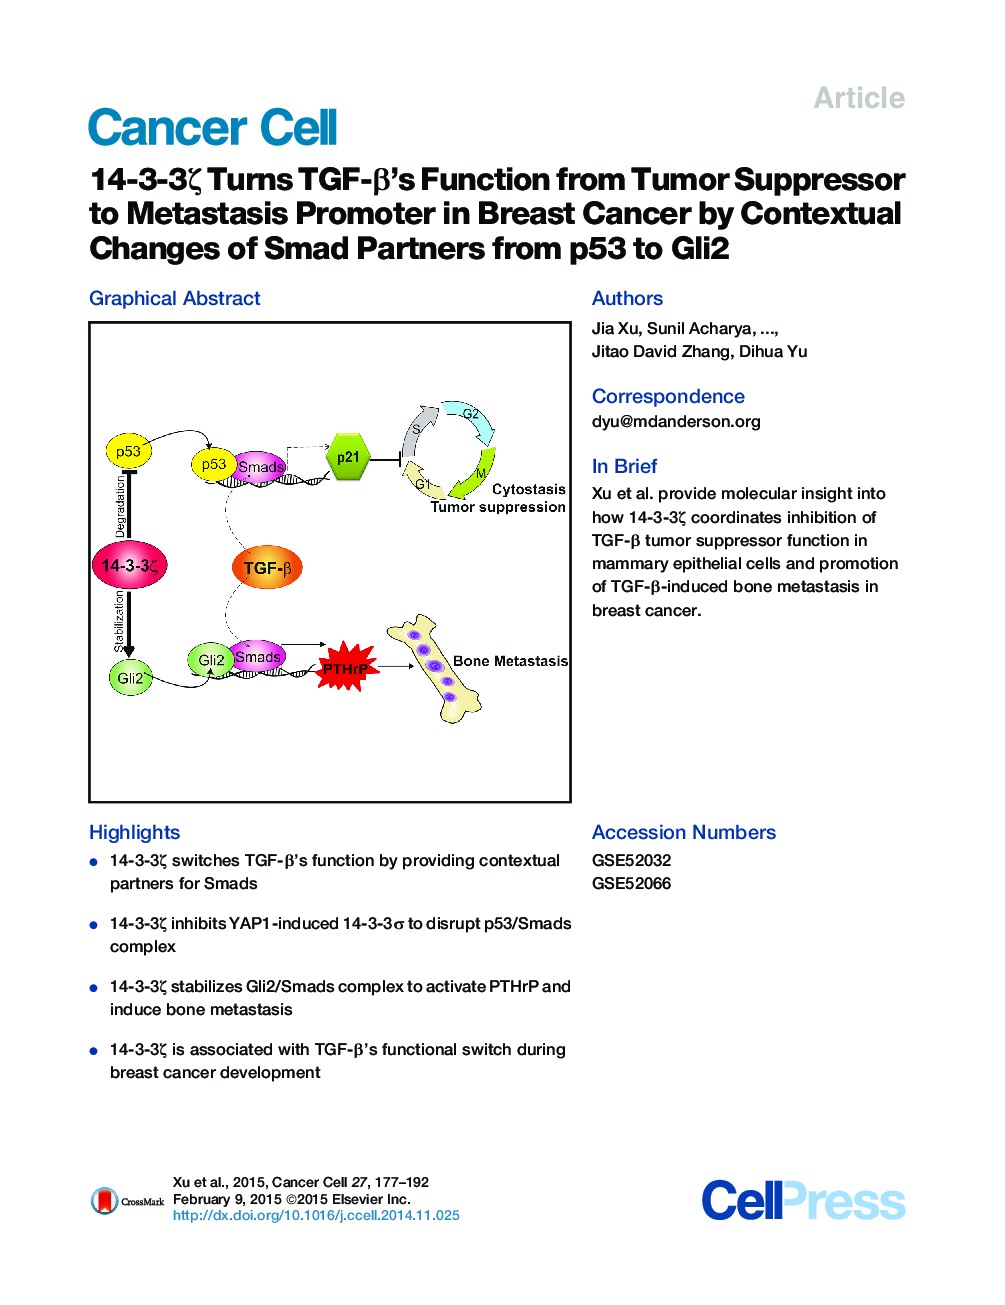 14-3-3ζ Turns TGF-β’s Function from Tumor Suppressor to Metastasis Promoter in Breast Cancer by Contextual Changes of Smad Partners from p53 to Gli2